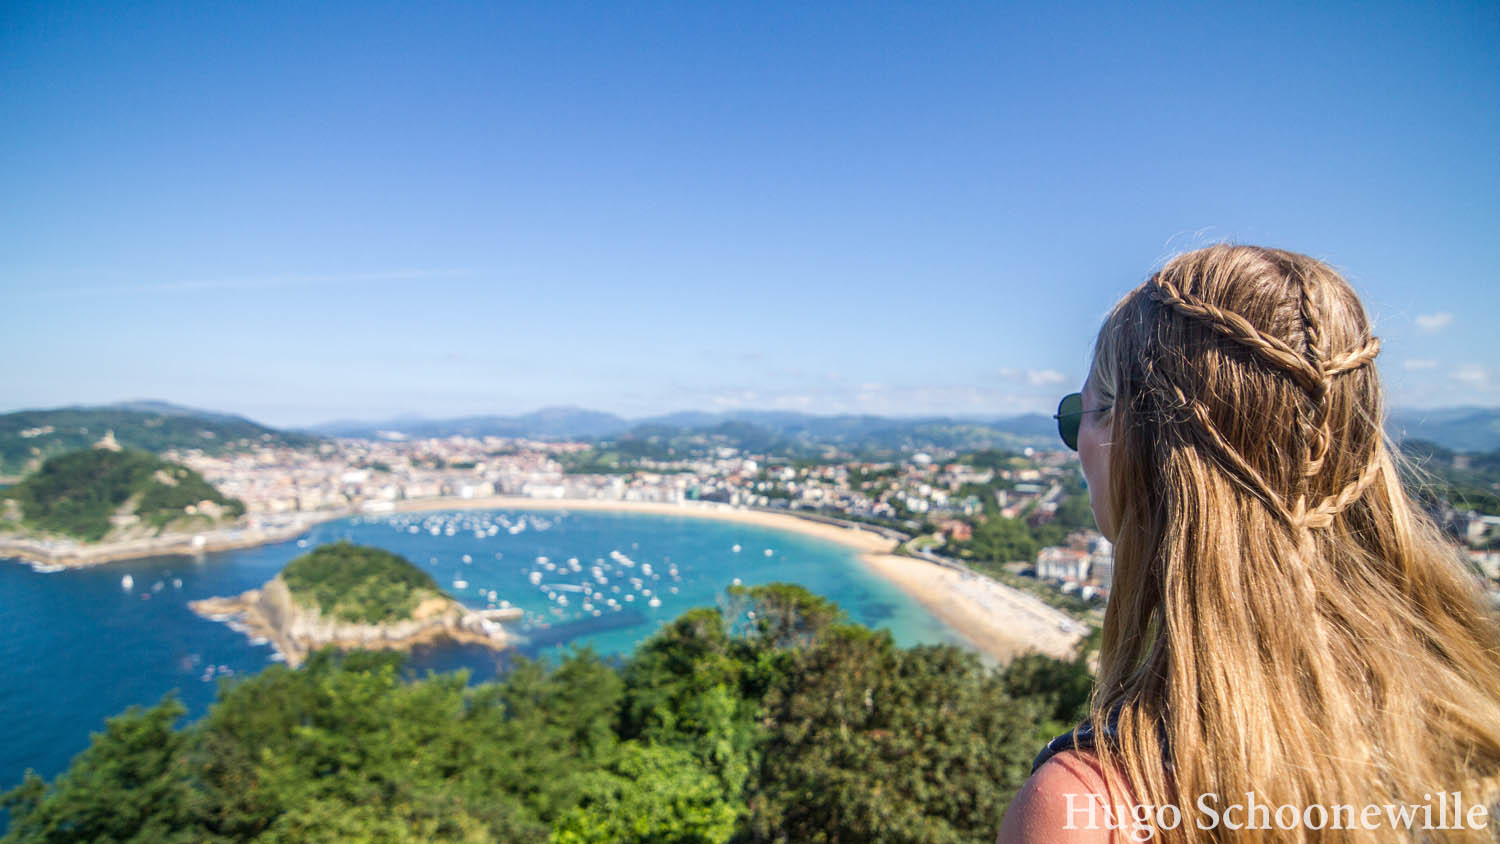 Uitkijkend over de baai van San Sebastián met helderblauw water en zon: meisje met blonde vlechten.